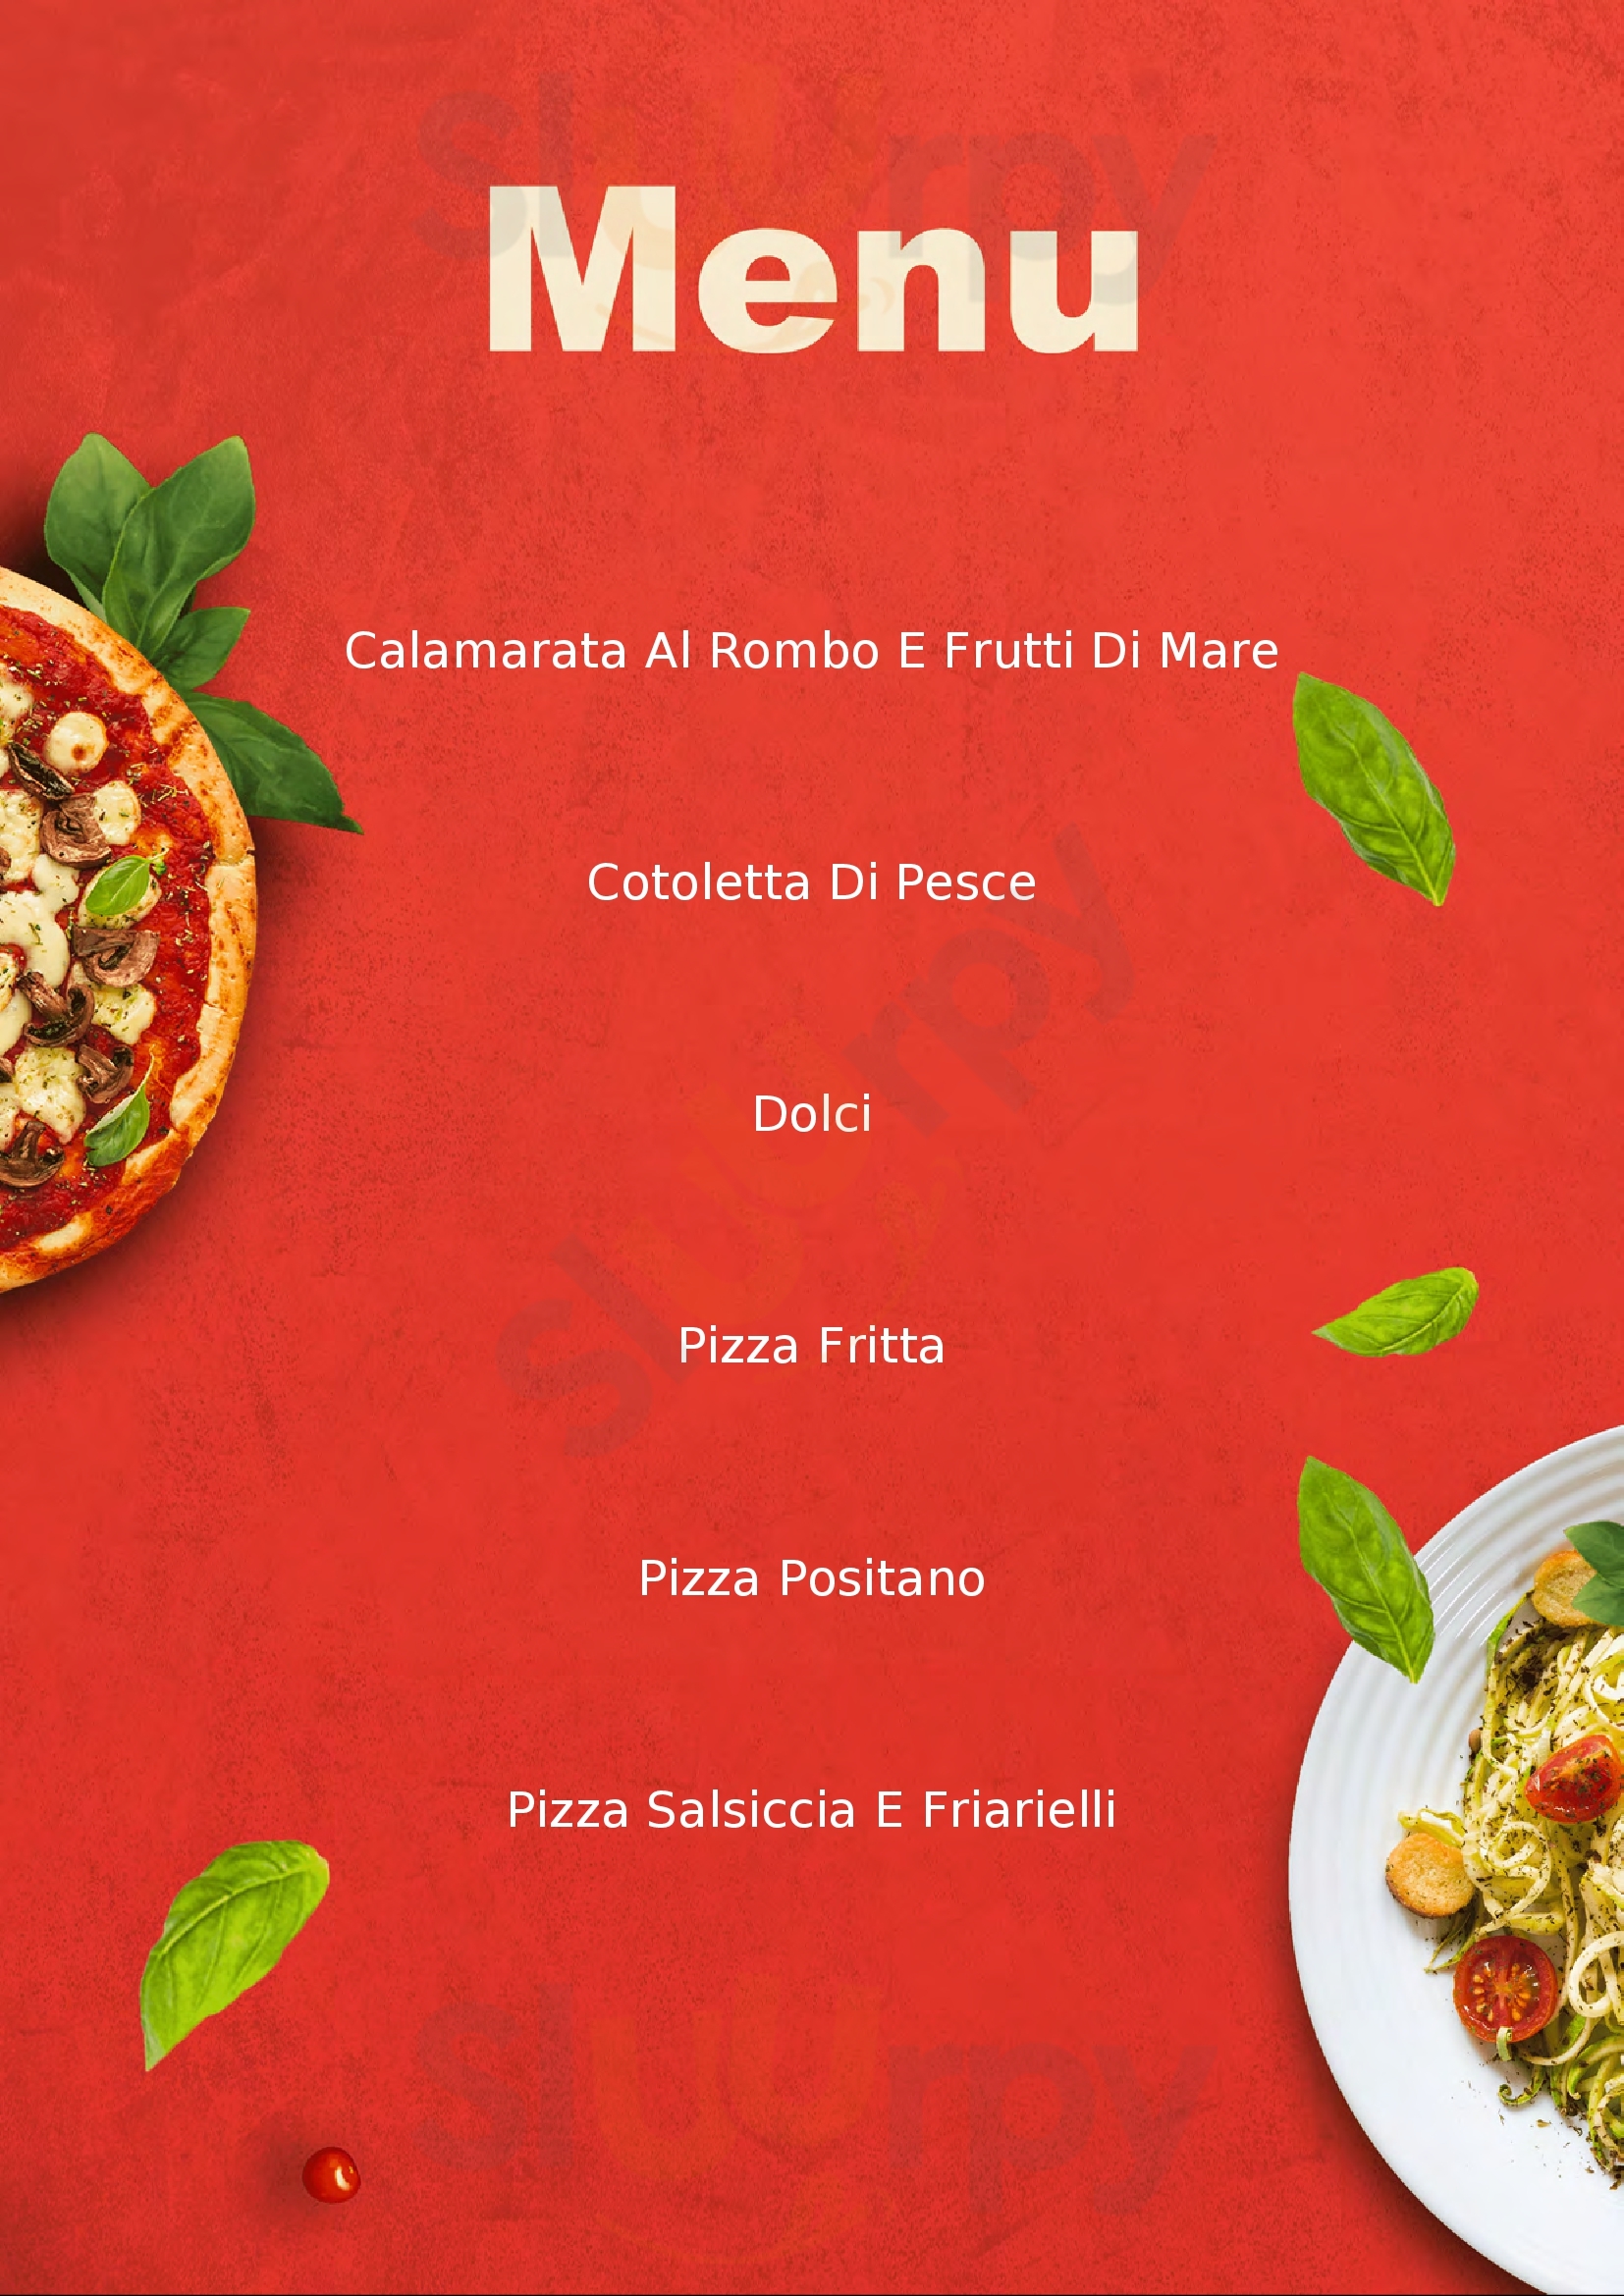 Napule's Ristorante Pizzeria Brescia menù 1 pagina